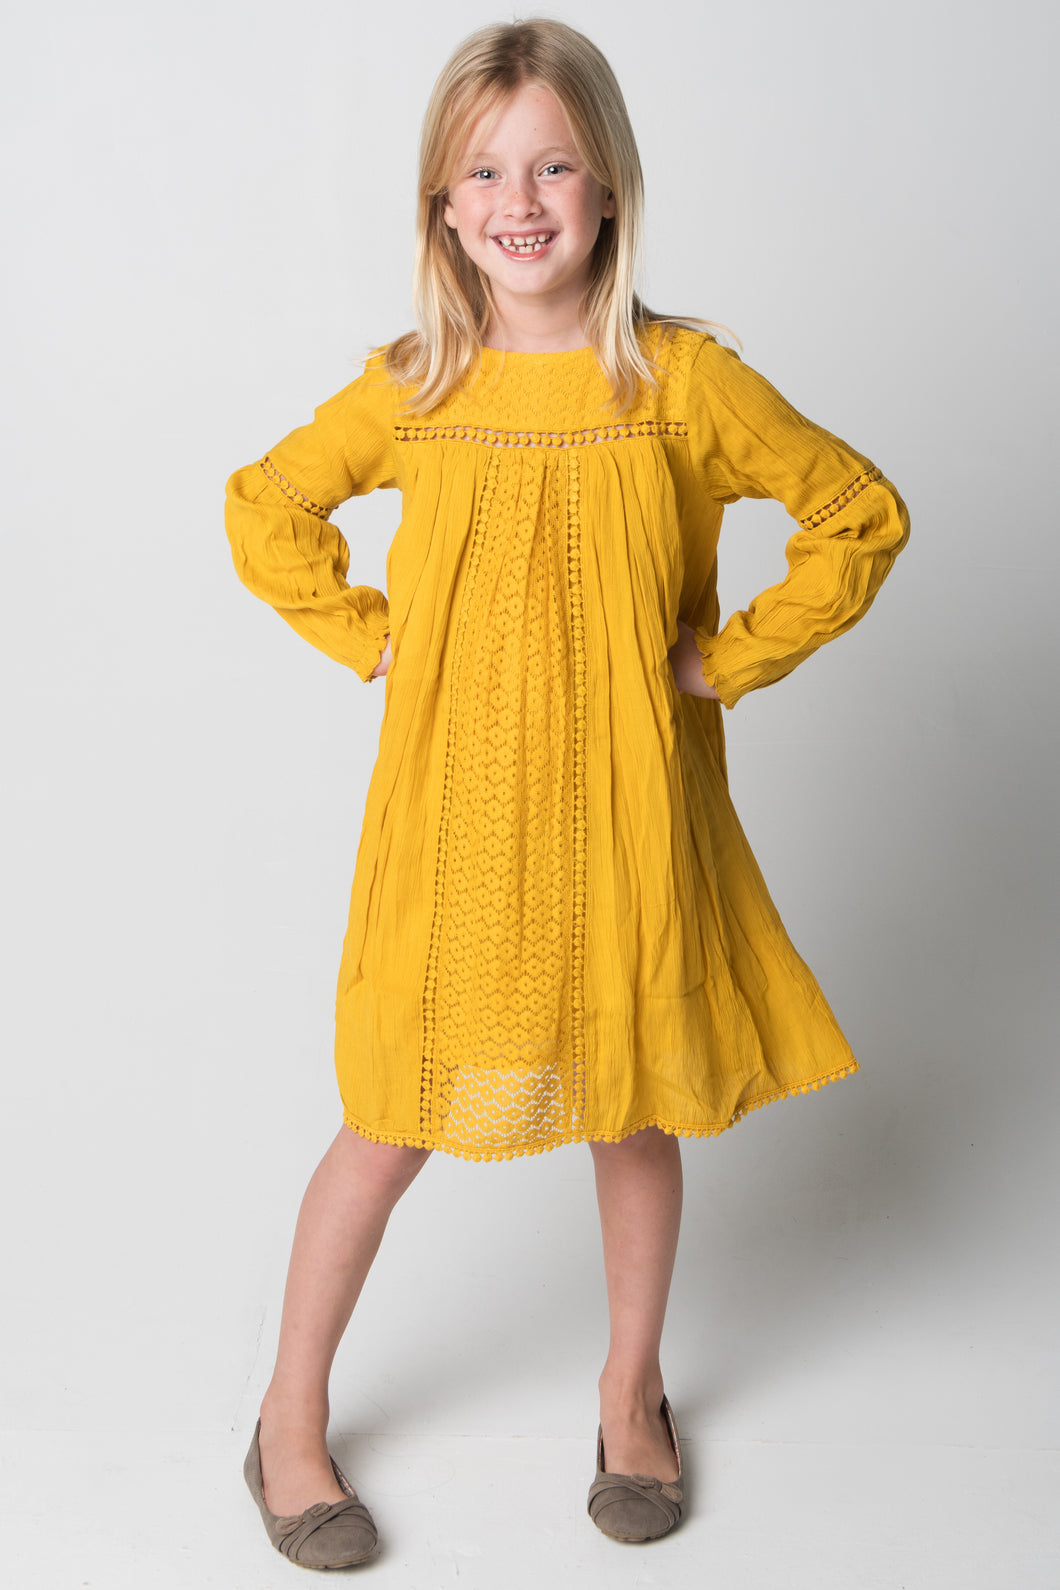 Yellow Lace Detail Dress - Kids Wholesale Boutique Clothing, Dress - Girls Dresses, Yo Baby Wholesale - Yo Baby